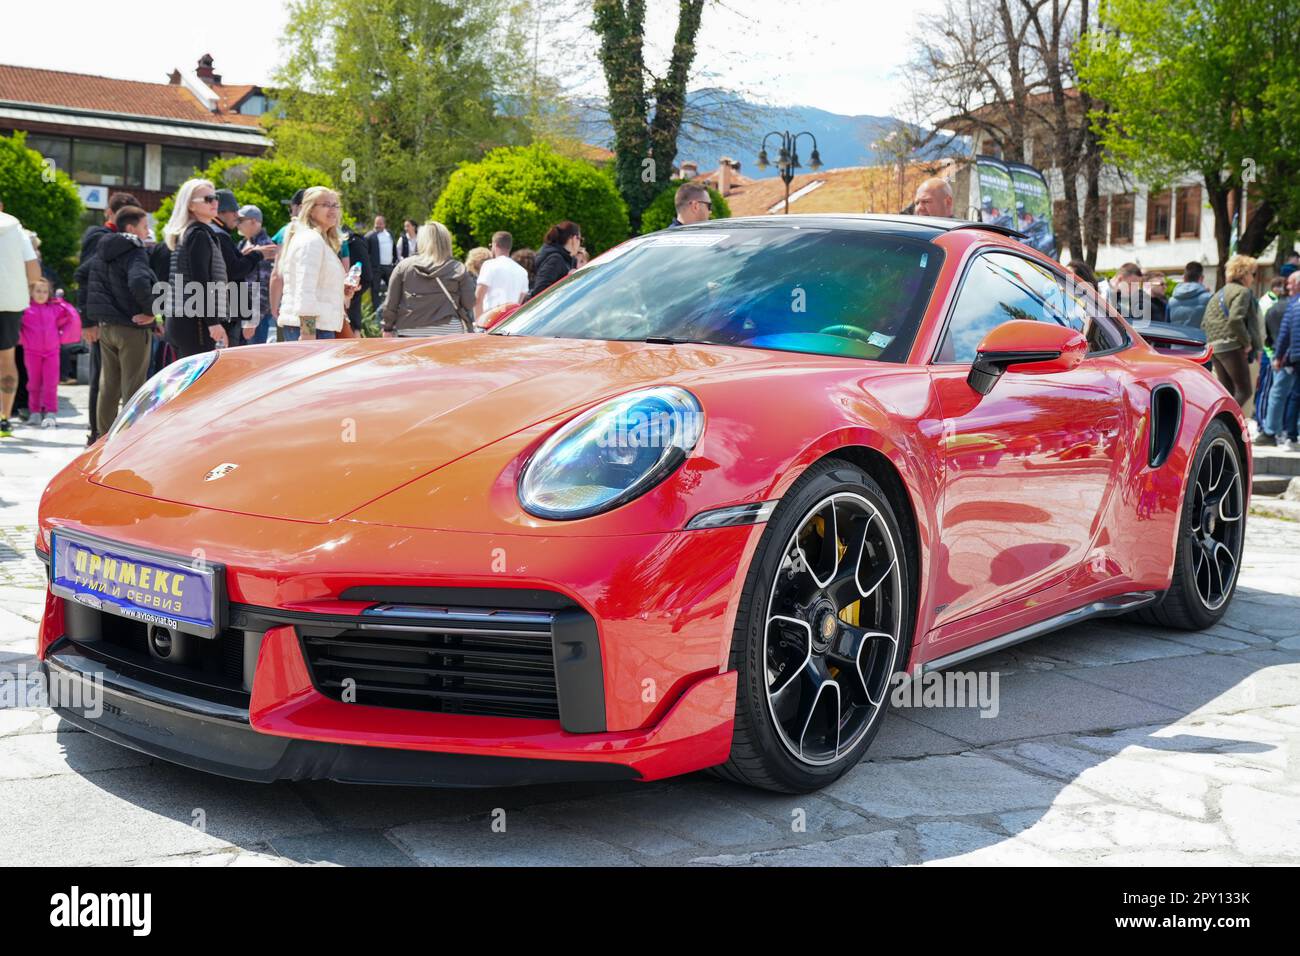 Une élégante voiture de sport rouge Porsche est garée sur une allée pavée, où les gens se rassemblent pour admirer son design élégant Banque D'Images